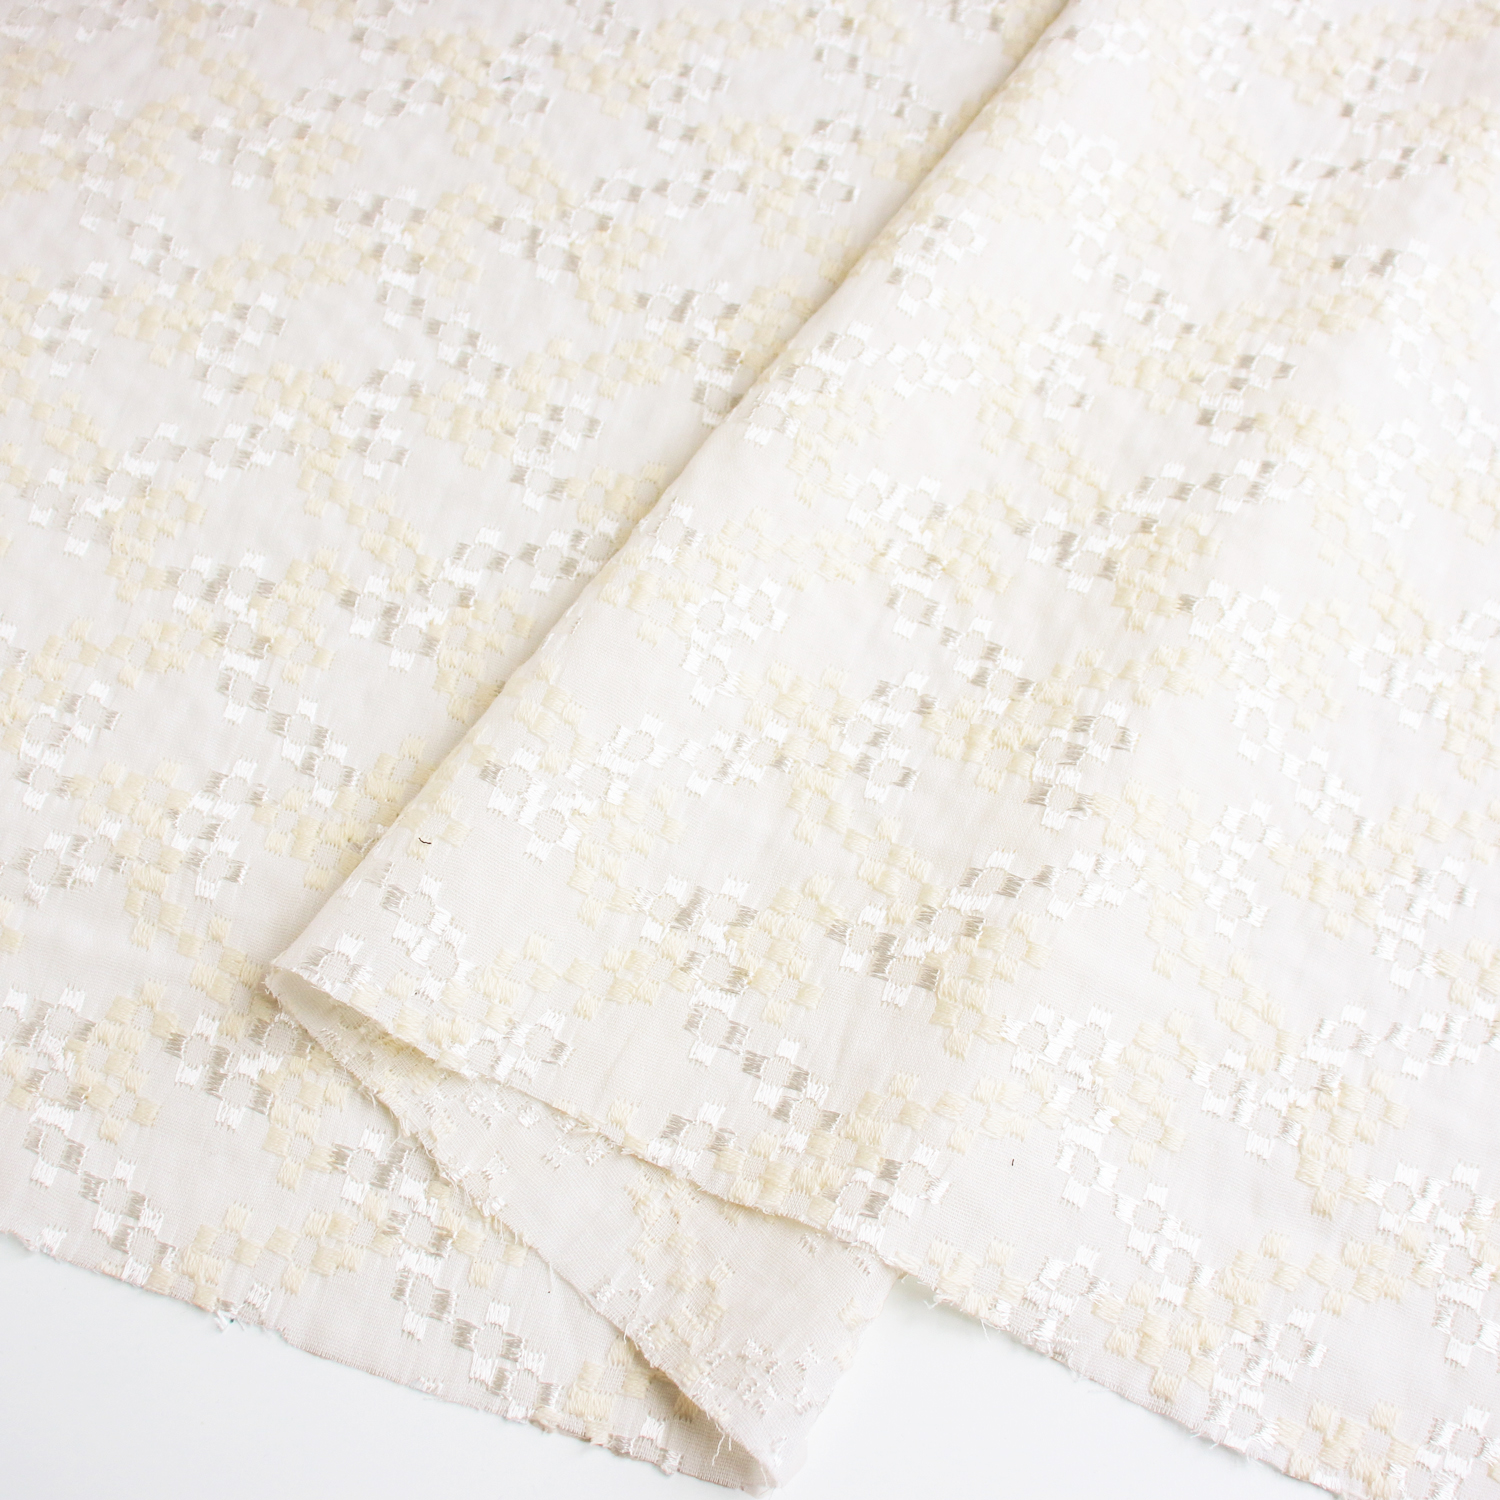 AL566-5090 cotton lace fabric, Width 100cm, 1m/unit (m)